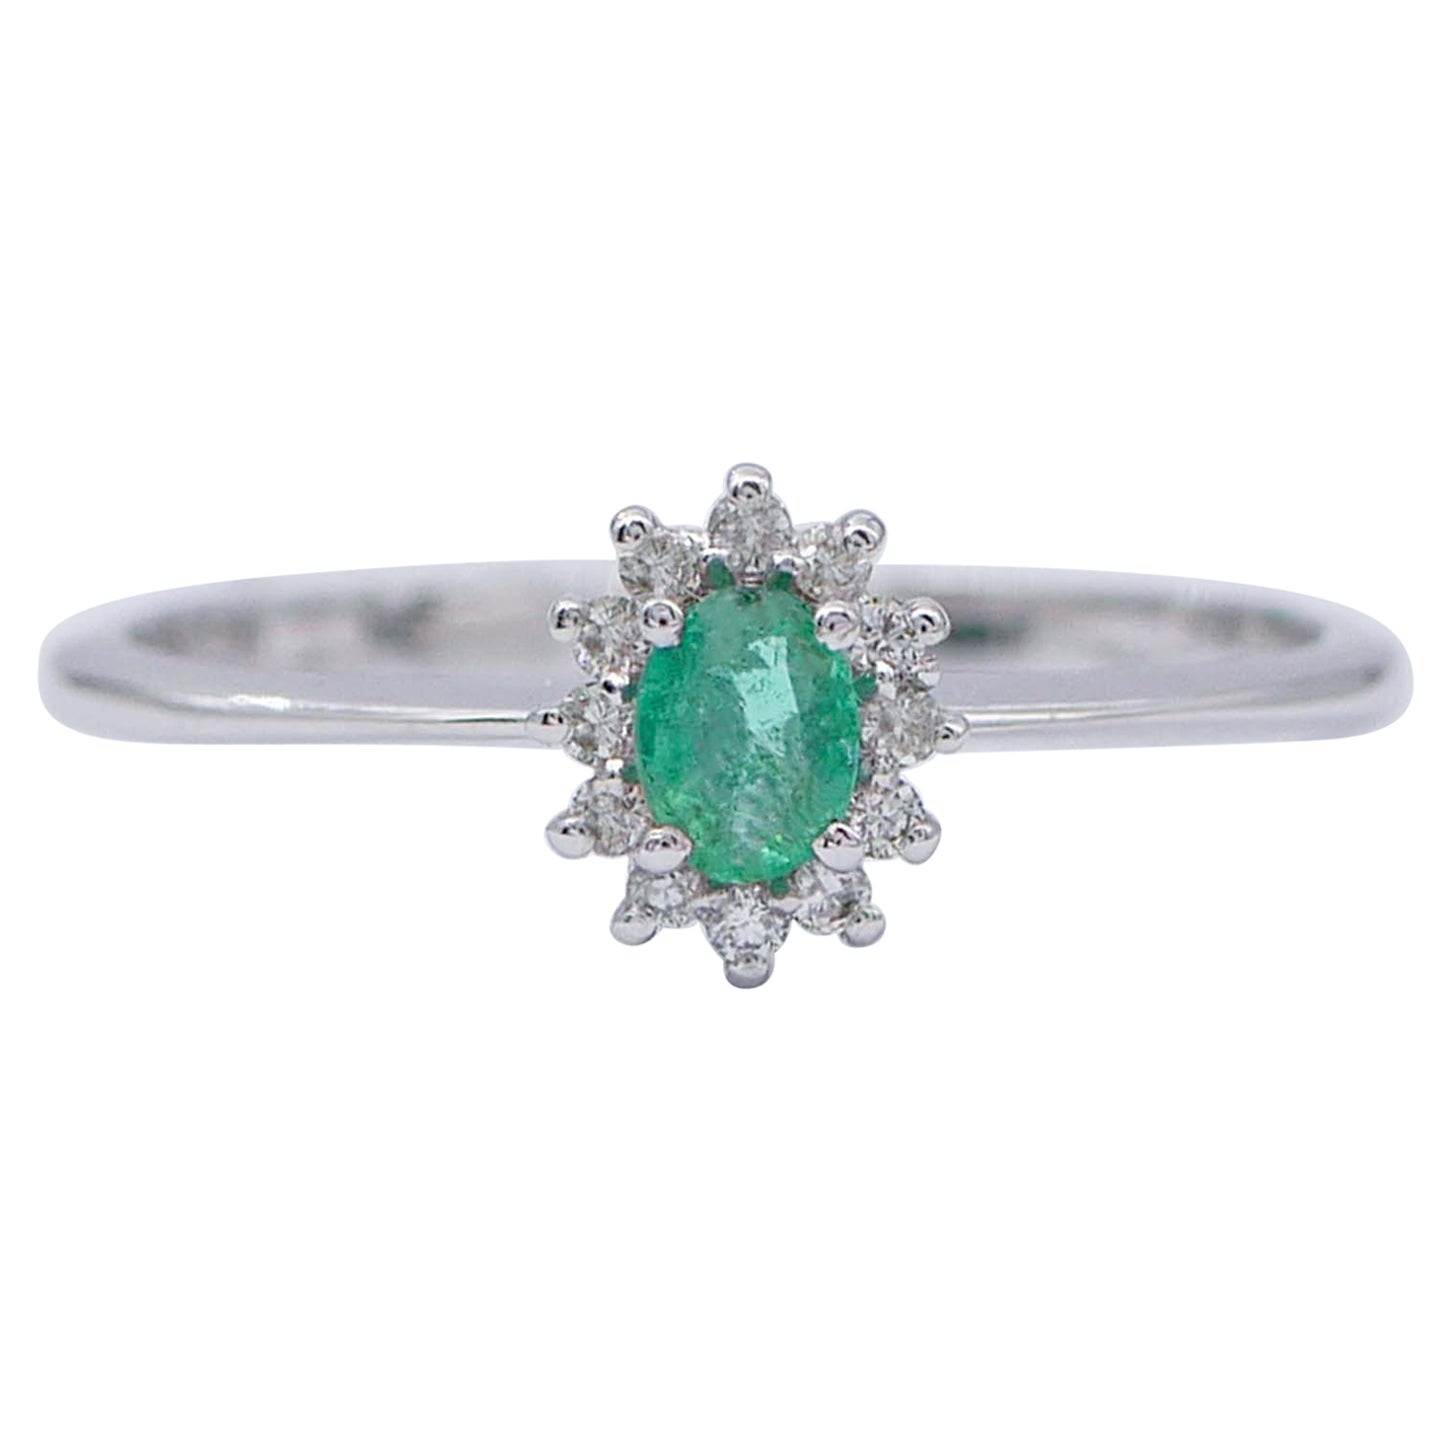 Emerald, Diamonds, 18 Karat White Gold Modern Ring